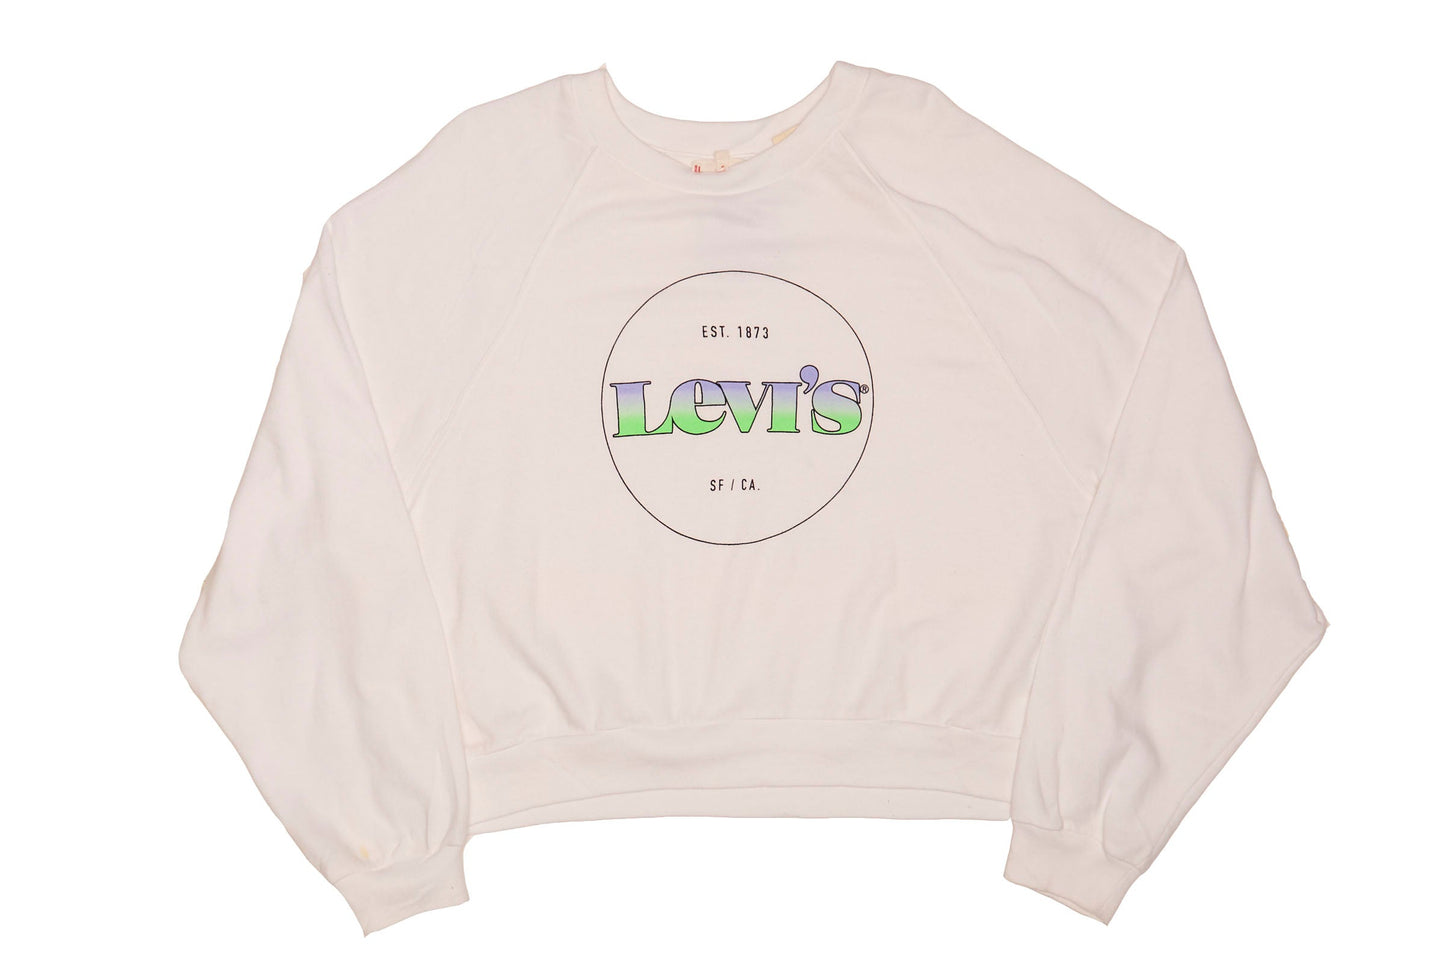 Womens Levis Crop Top Sweatshirt - L